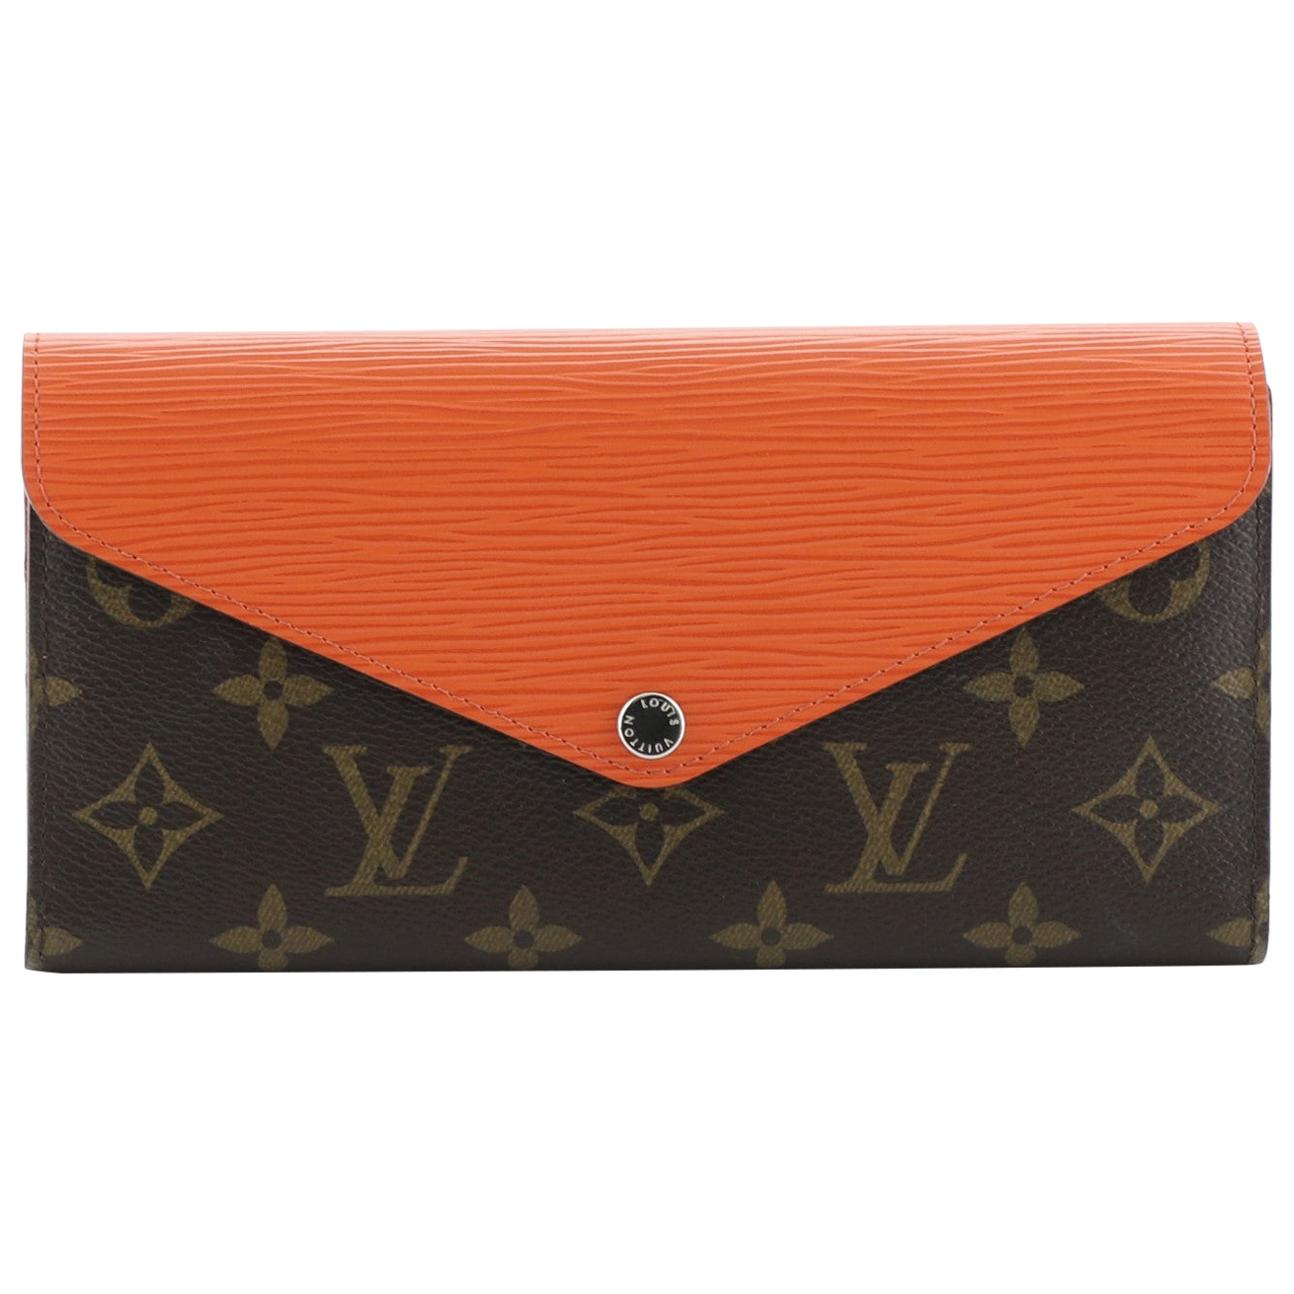 LOU wallet by Louis Vuitton 